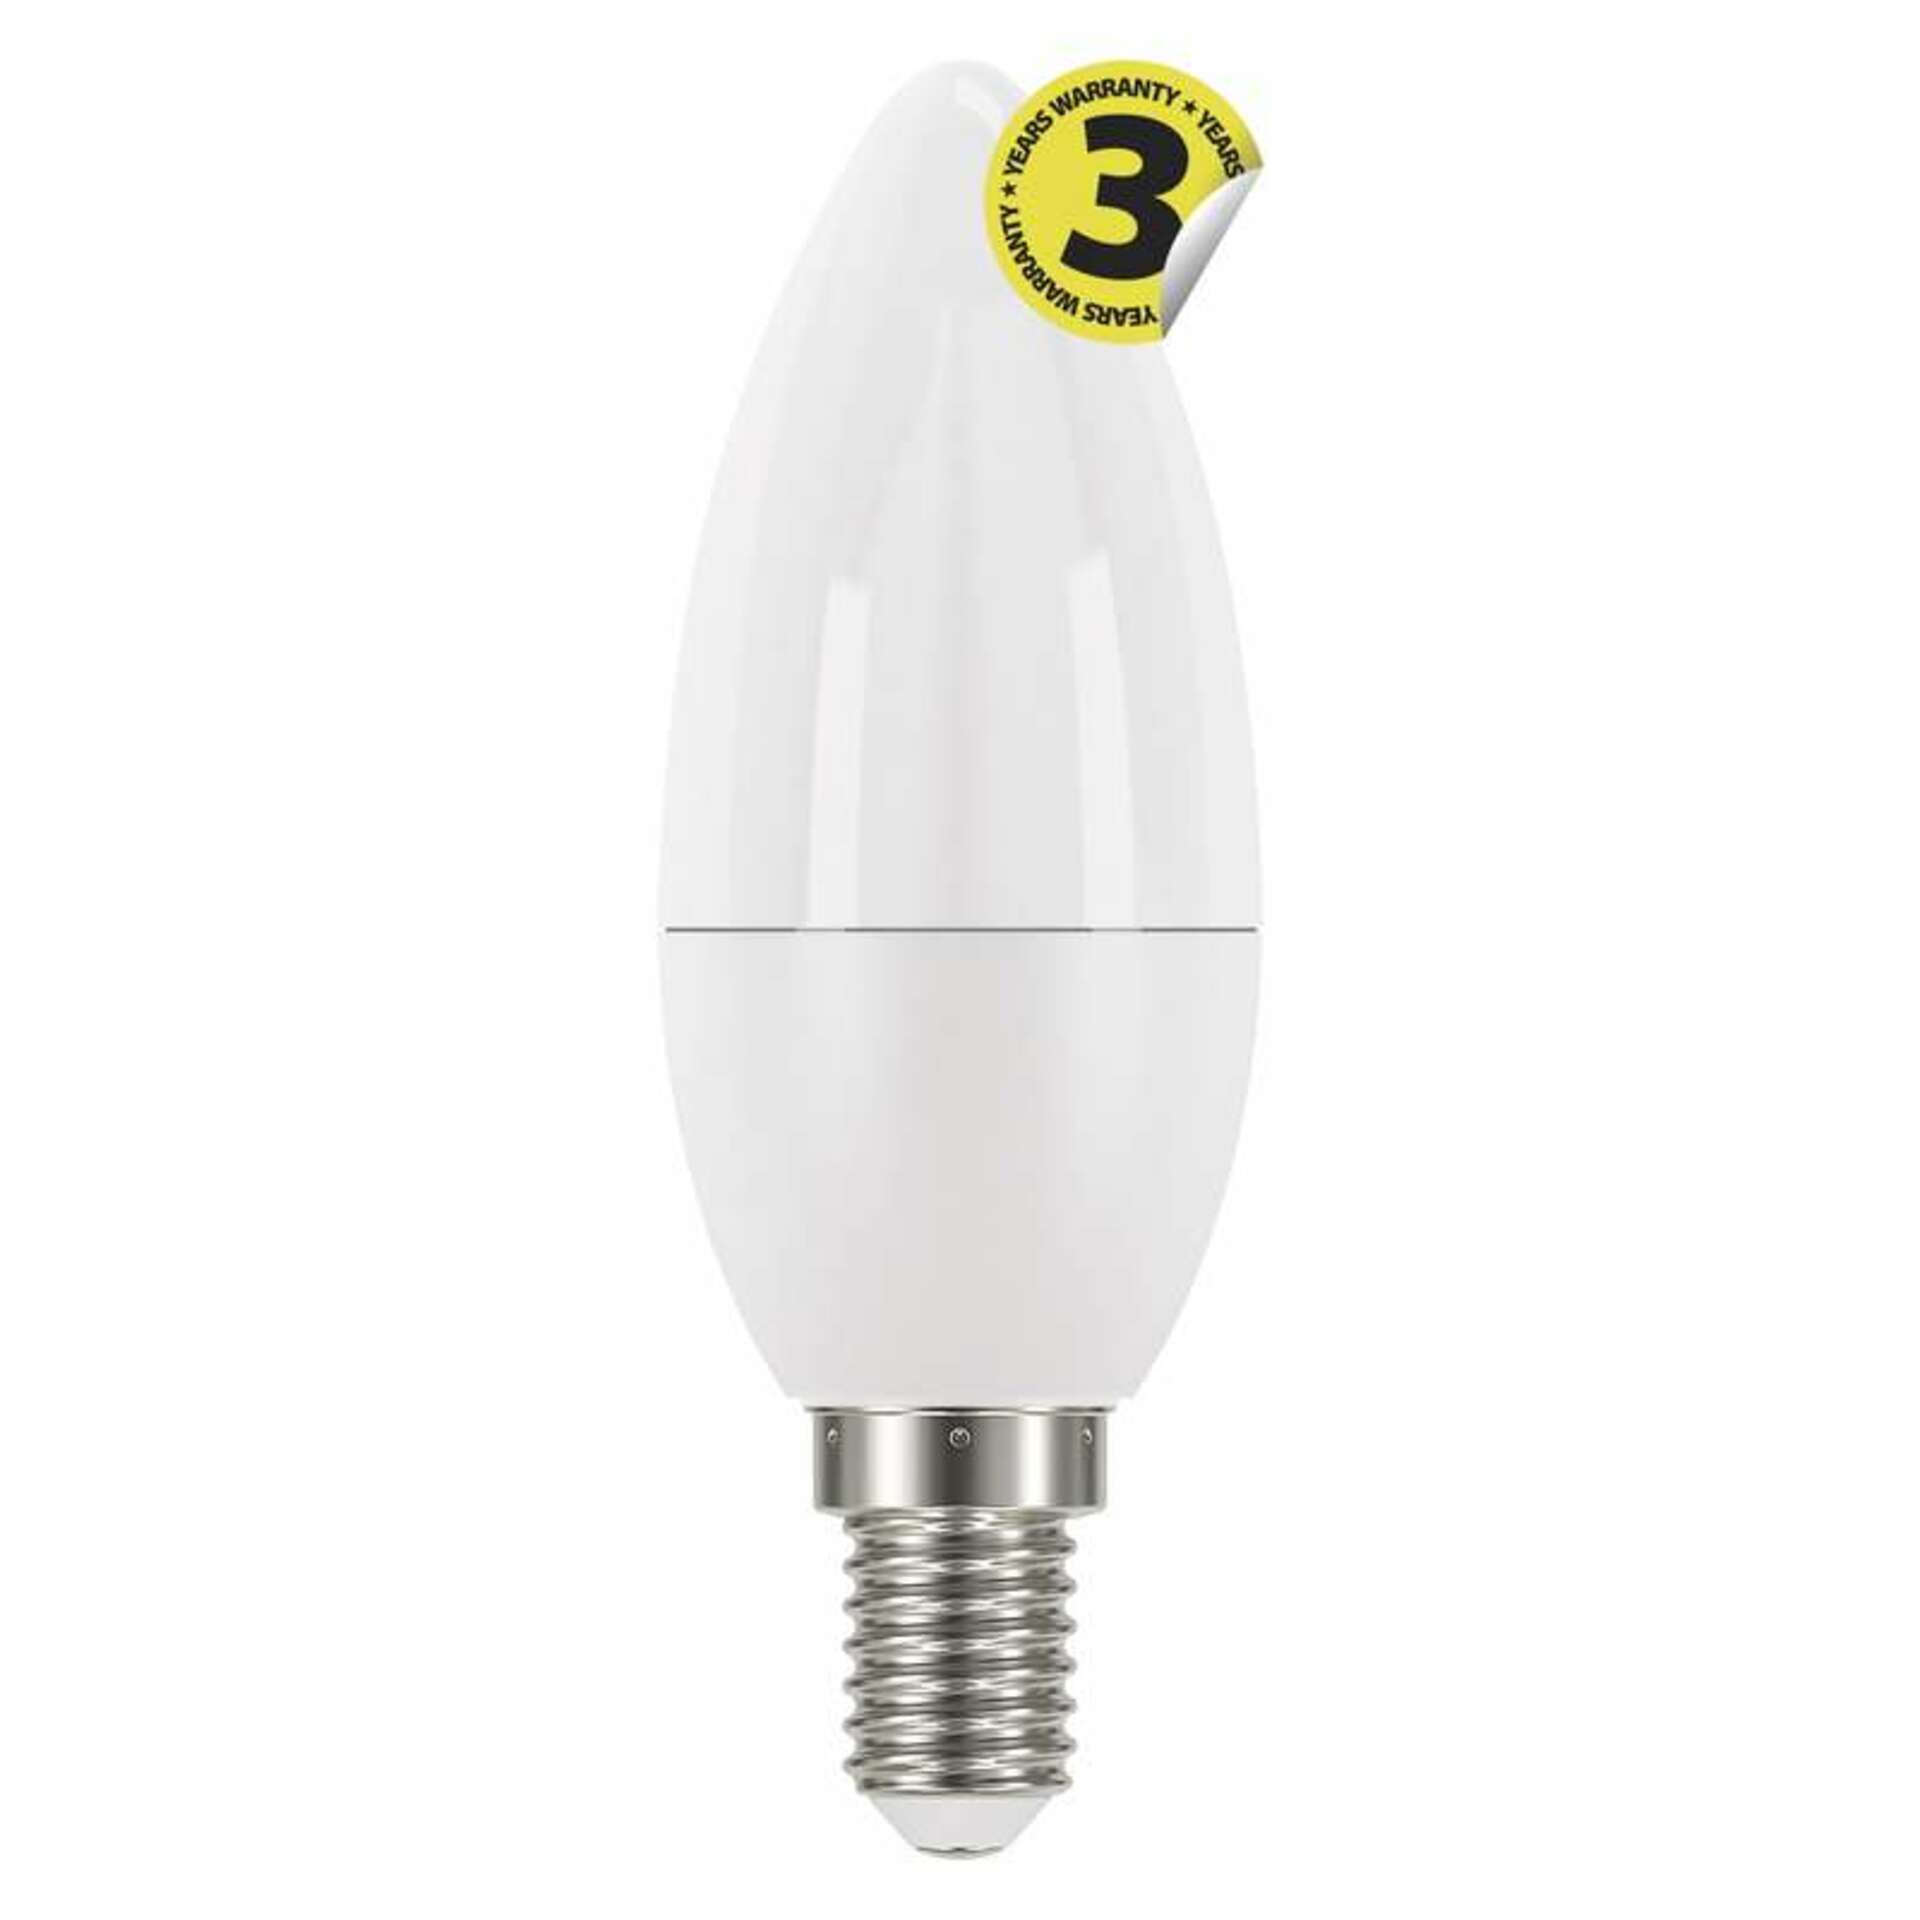 EMOS Lighting EMOS LED žárovka Classic Candle 6W E14 neutrální bílá 1525731401